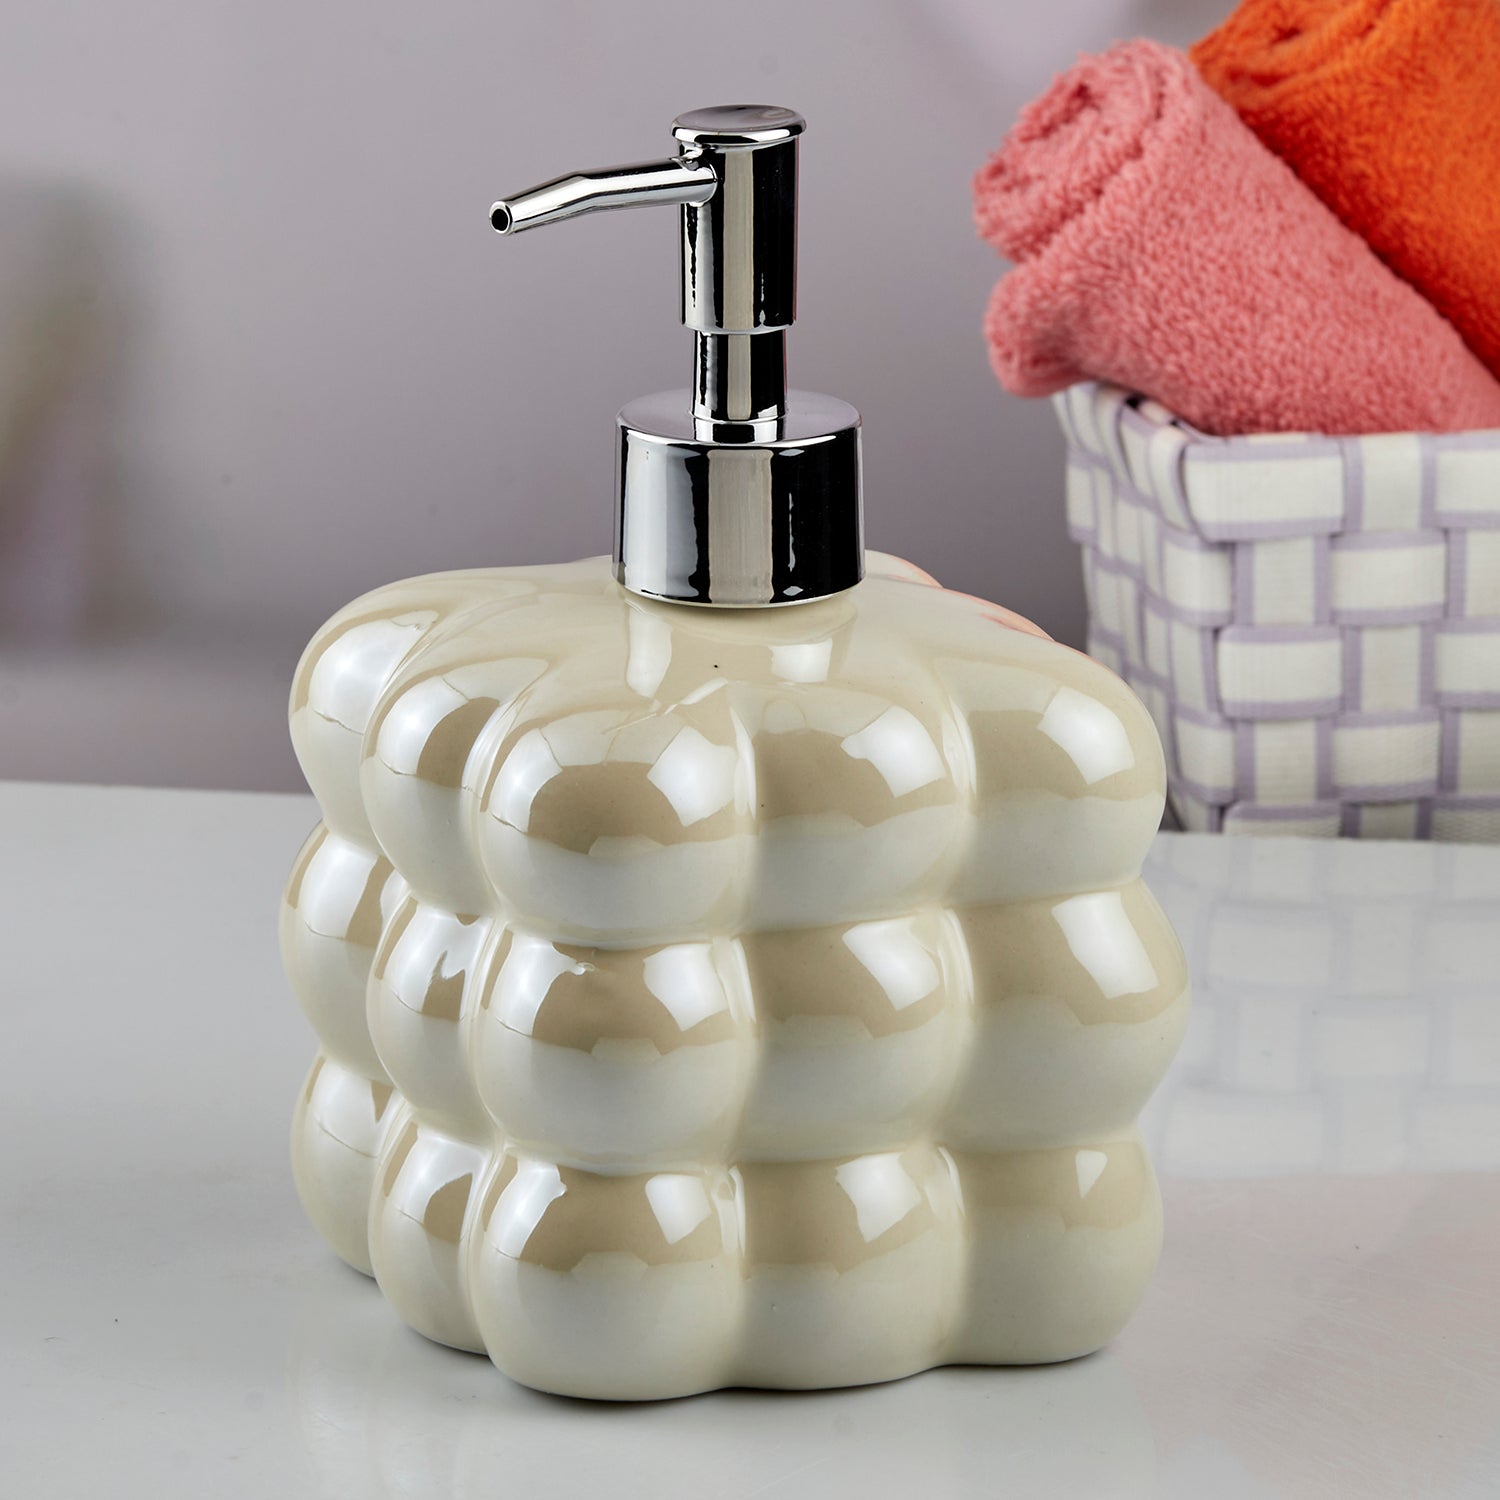 Ceramic Soap Dispenser liquid handwash pump for Bathroom, Set of 1, Beige (10609)